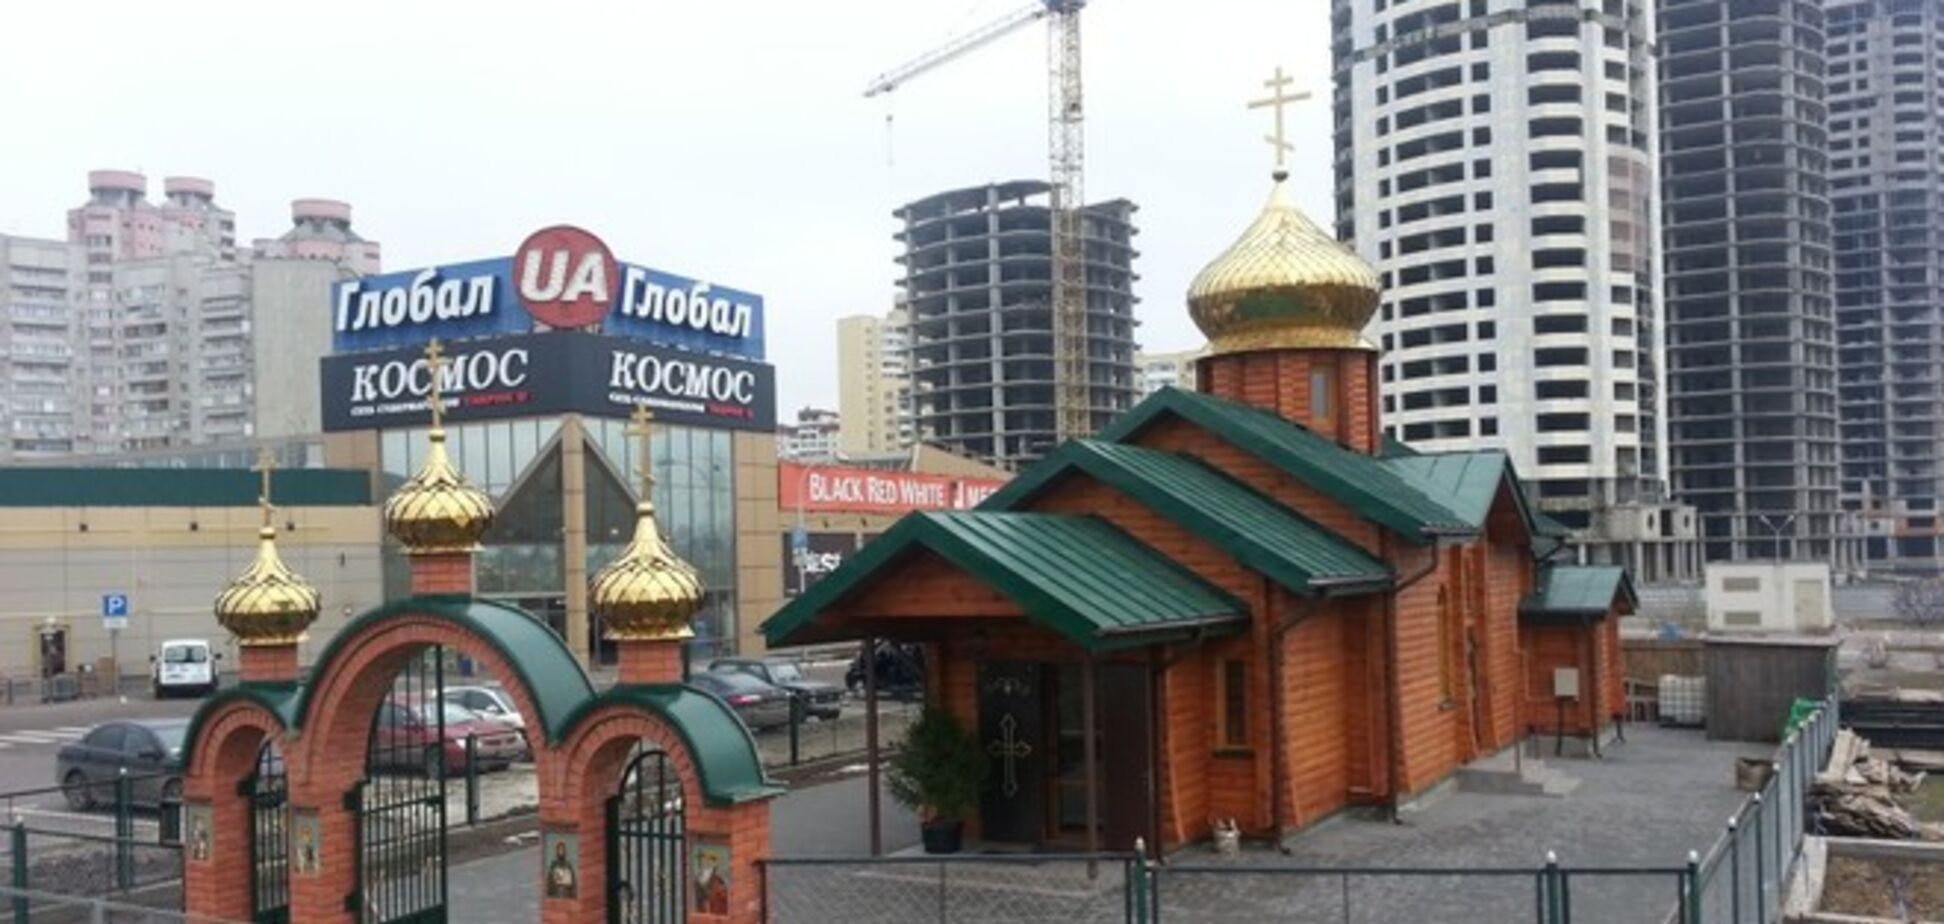 В Киеве возле храма обнаружили покрышку: УПЦ МП заявило о попытке поджога